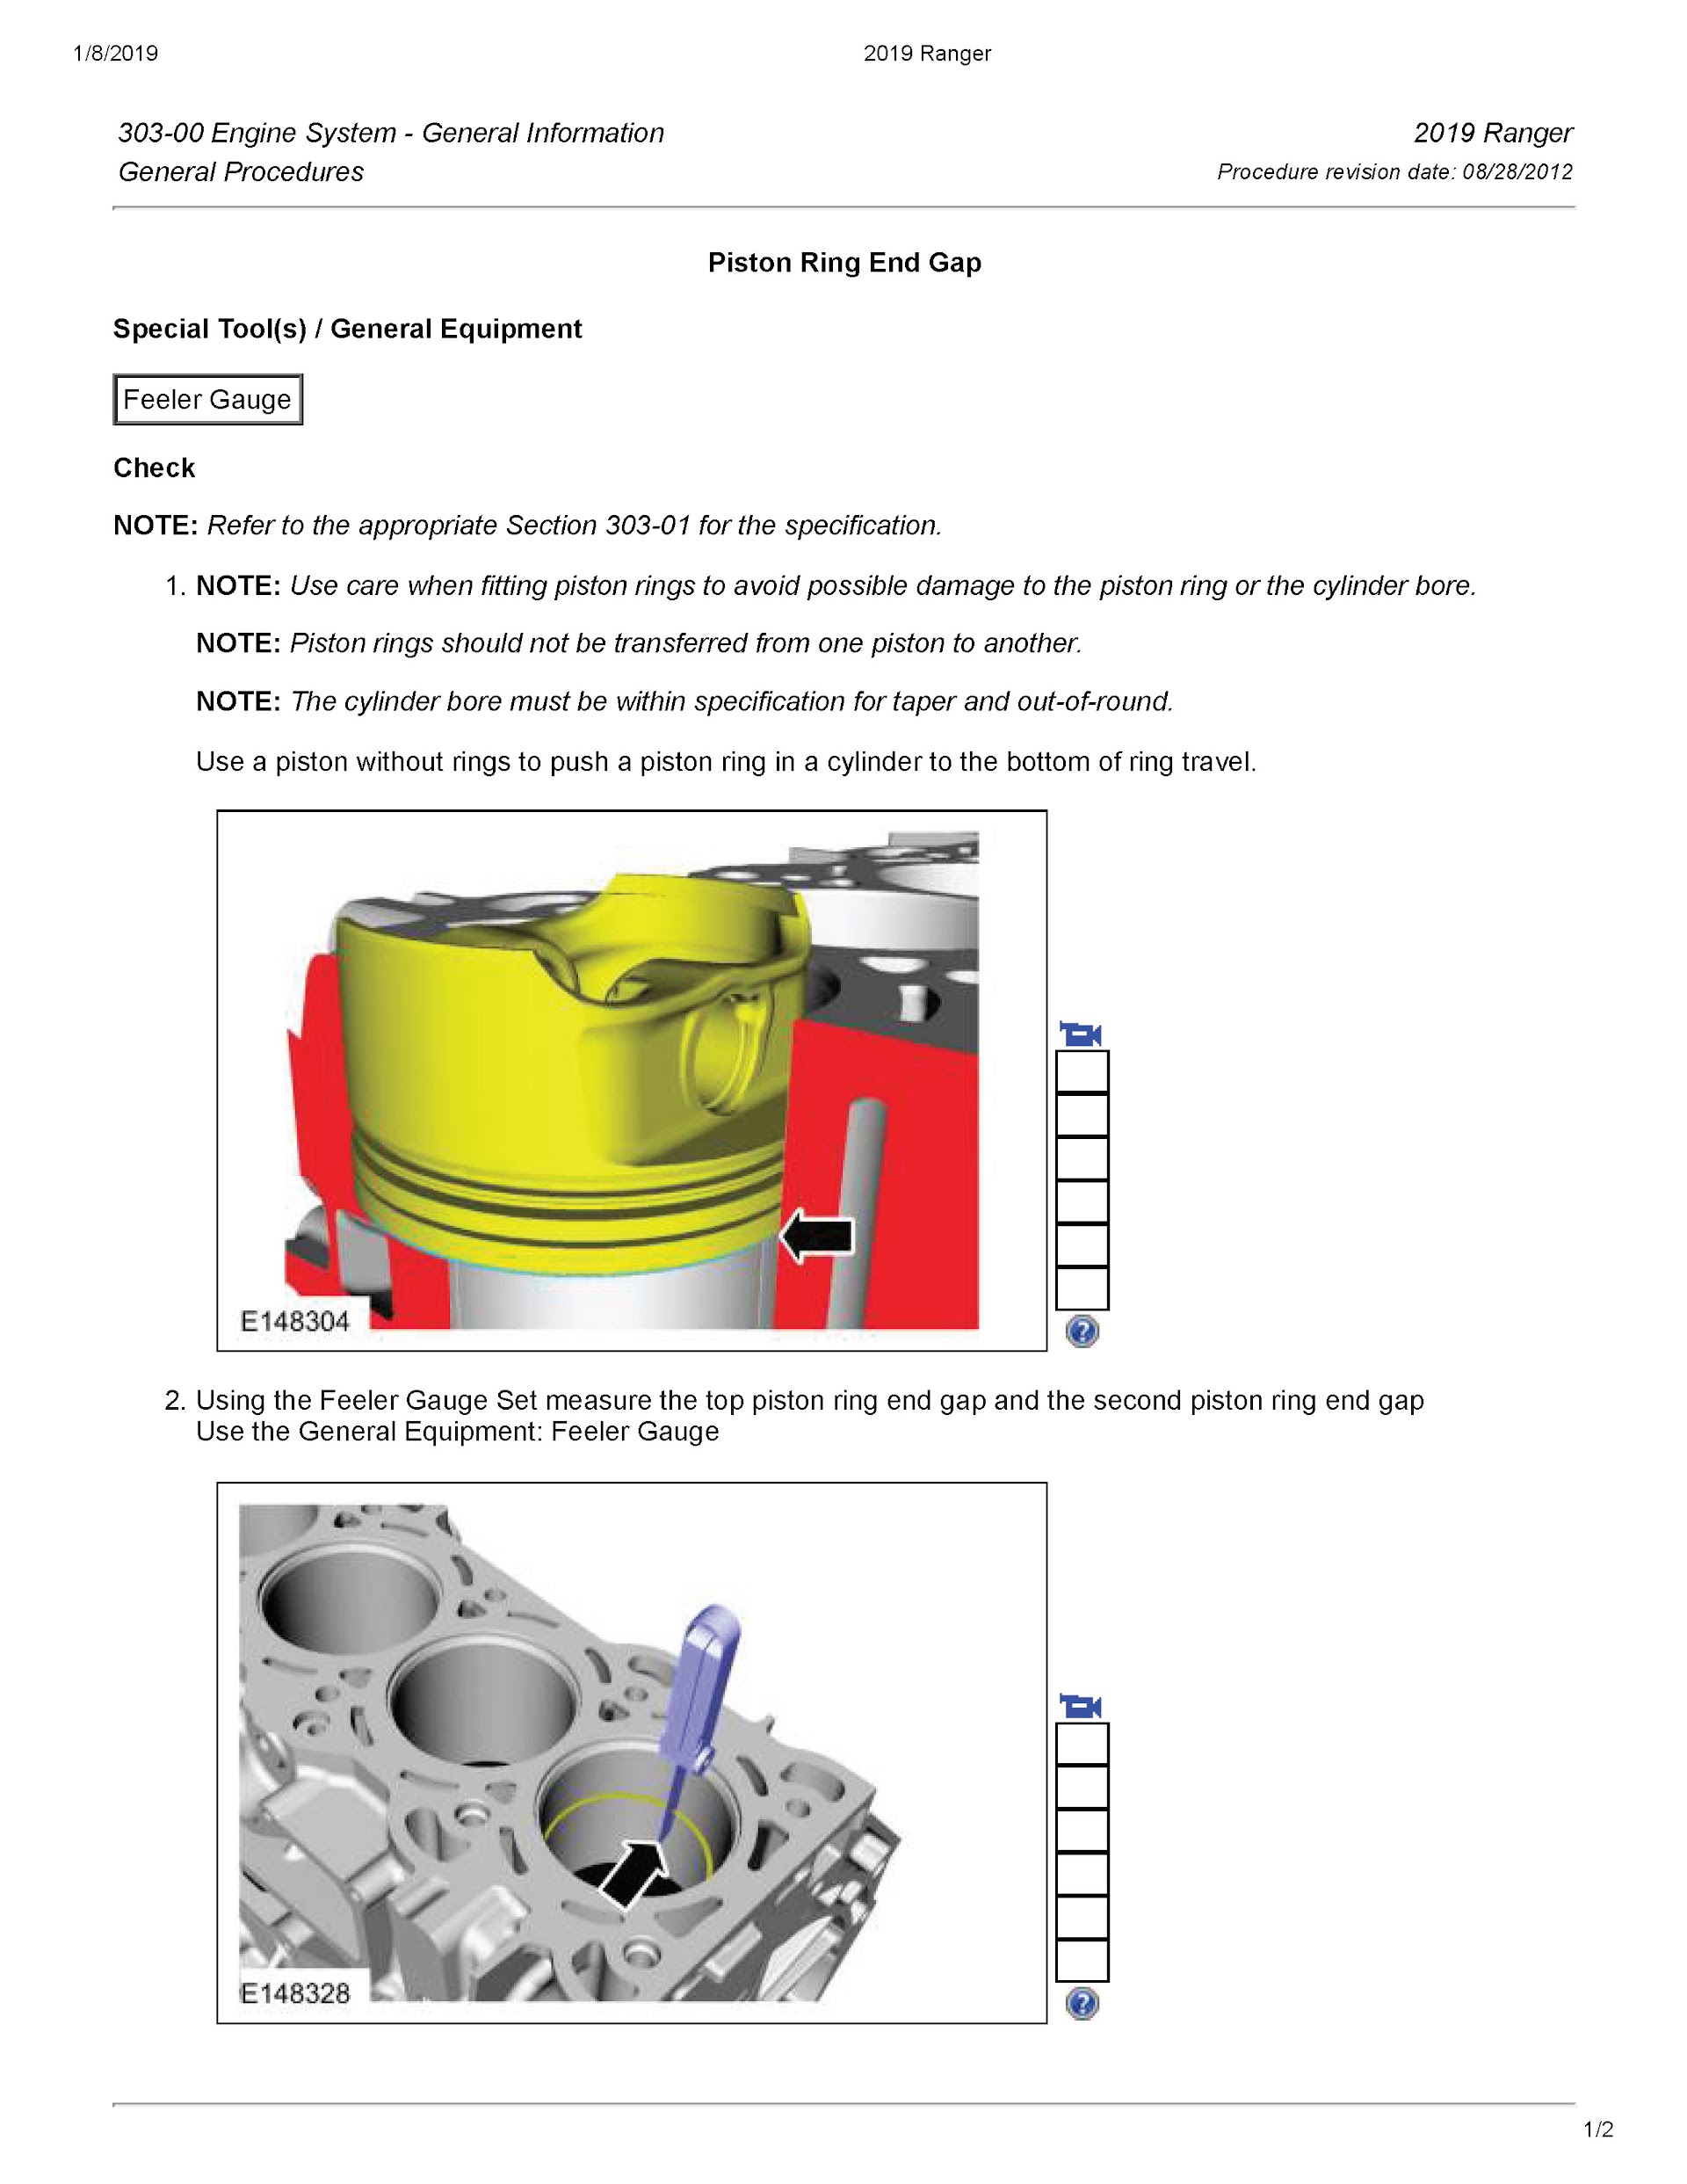 2019 Ford Ranger Repair Manual, Engine Repair, Piston and Ring